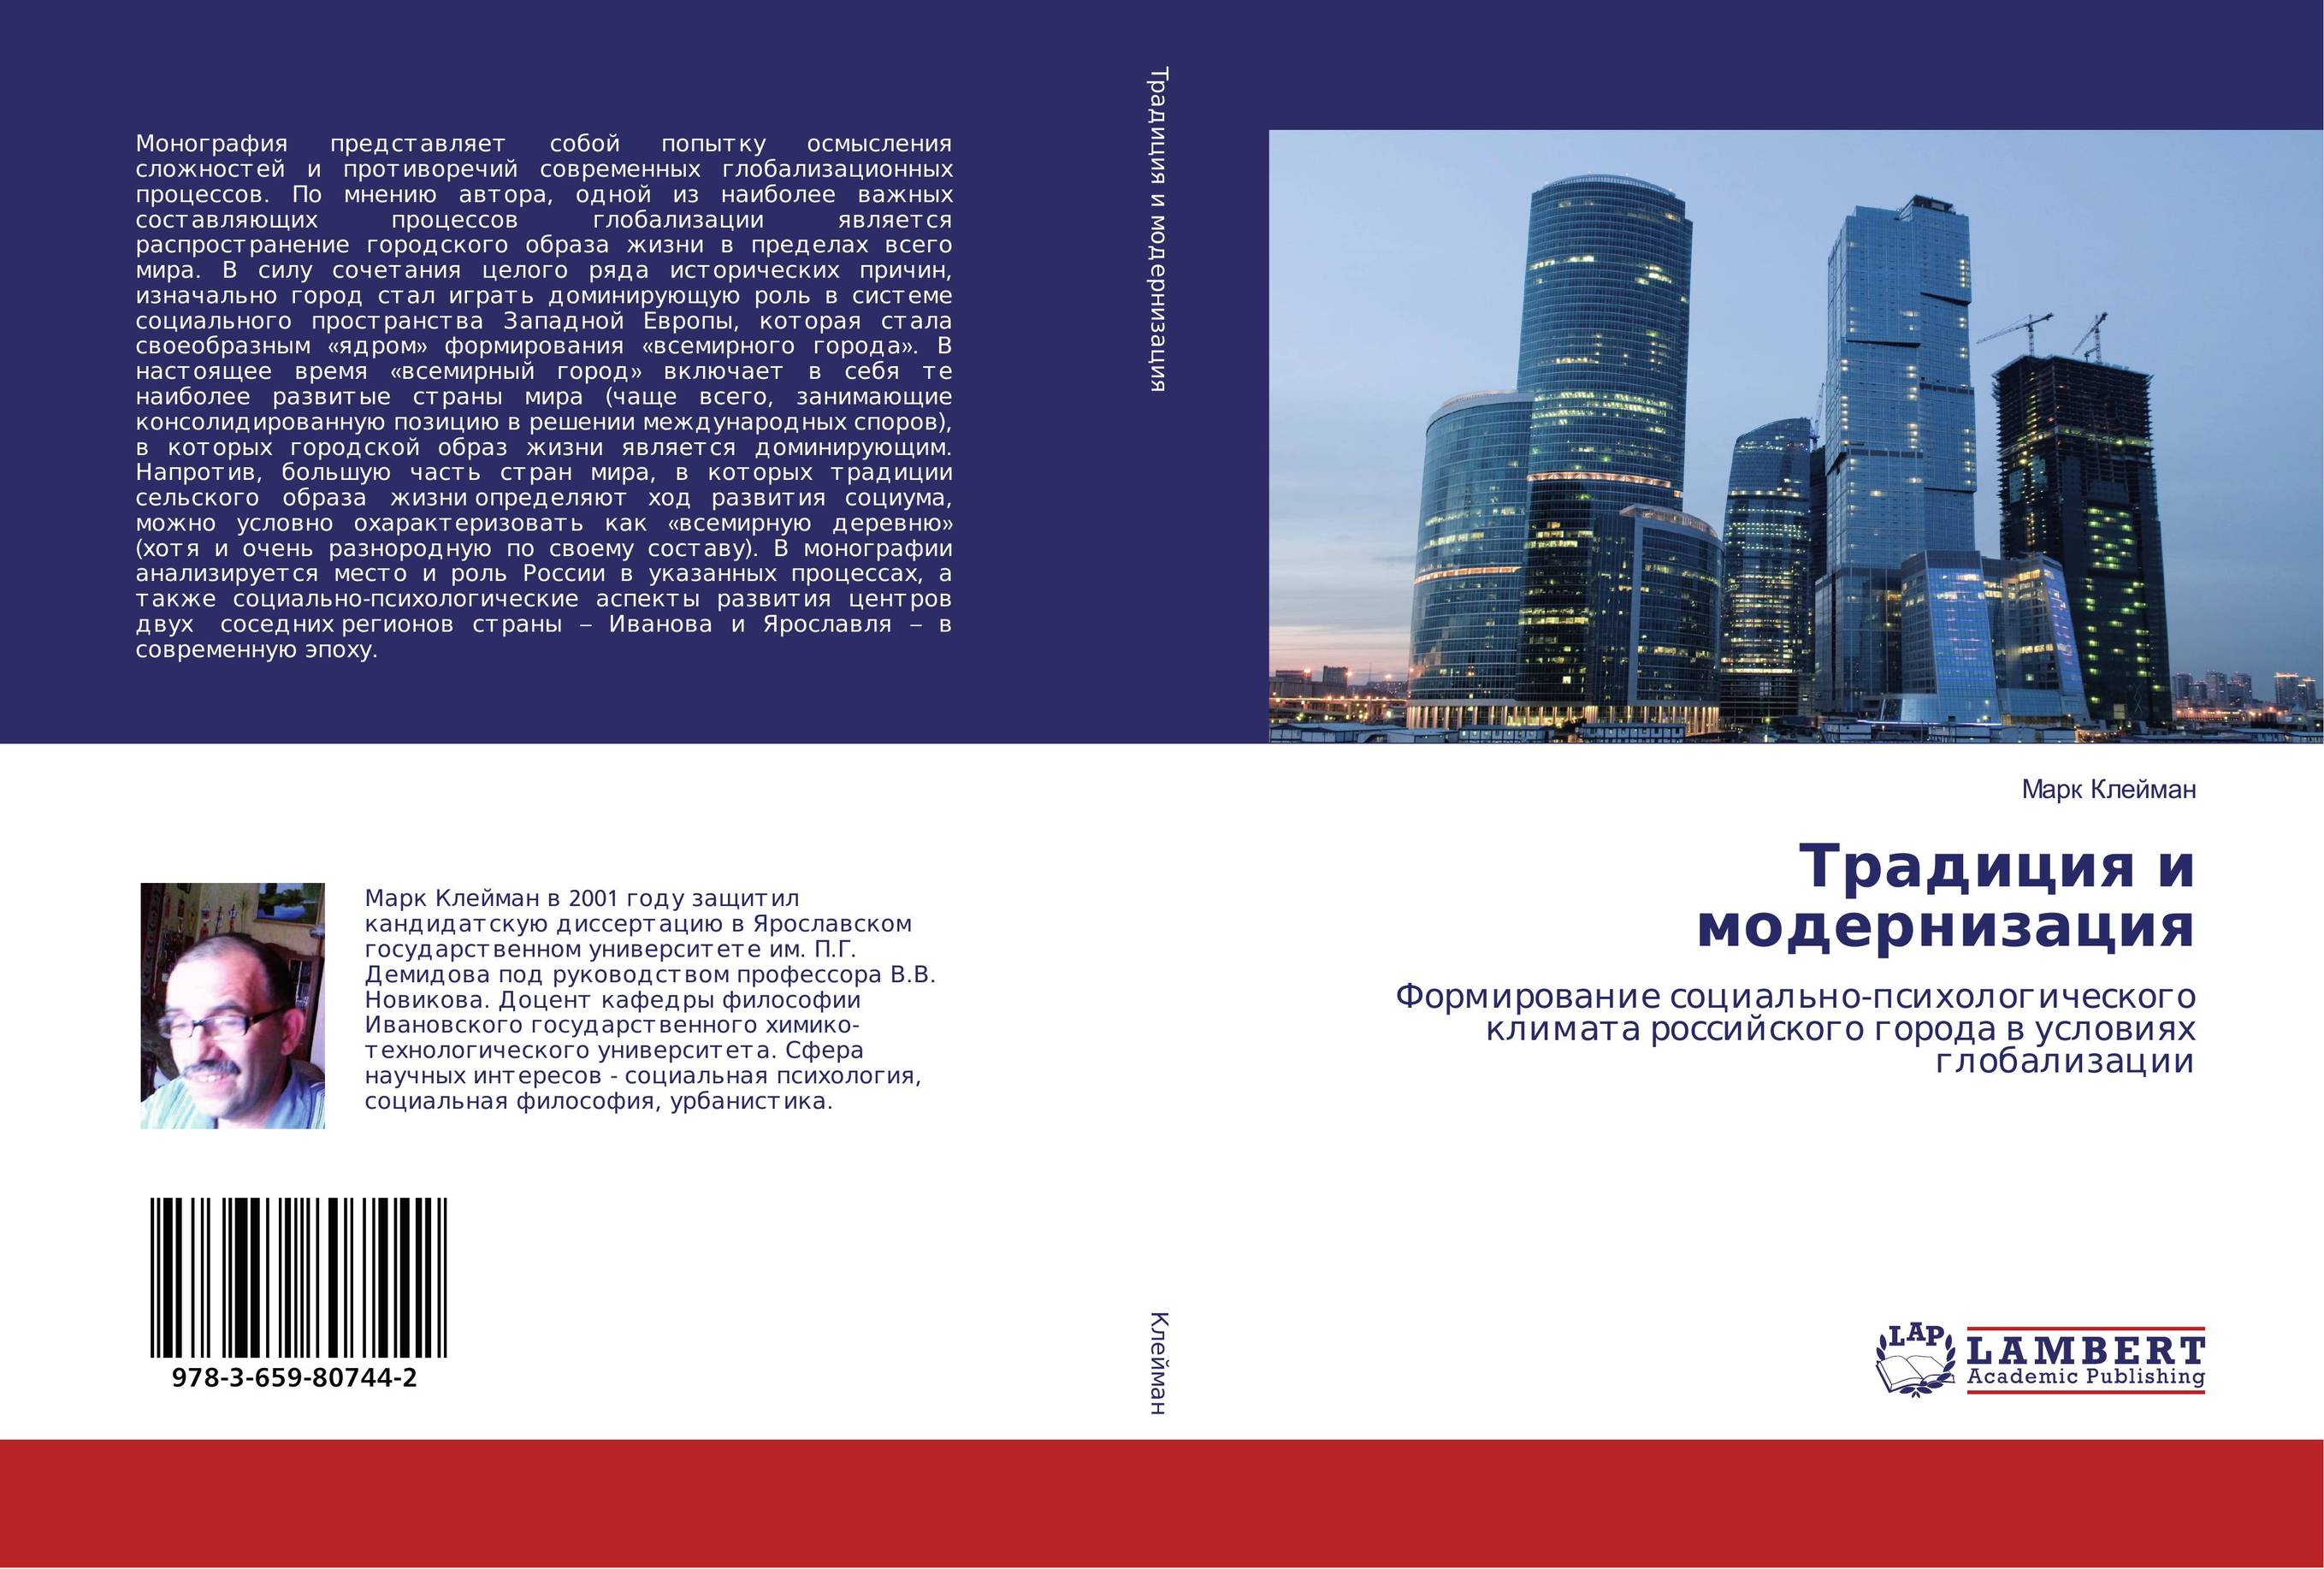 
        Традиция и модернизация. Формирование социально-психологического климата российского города в условиях глобализации.
      